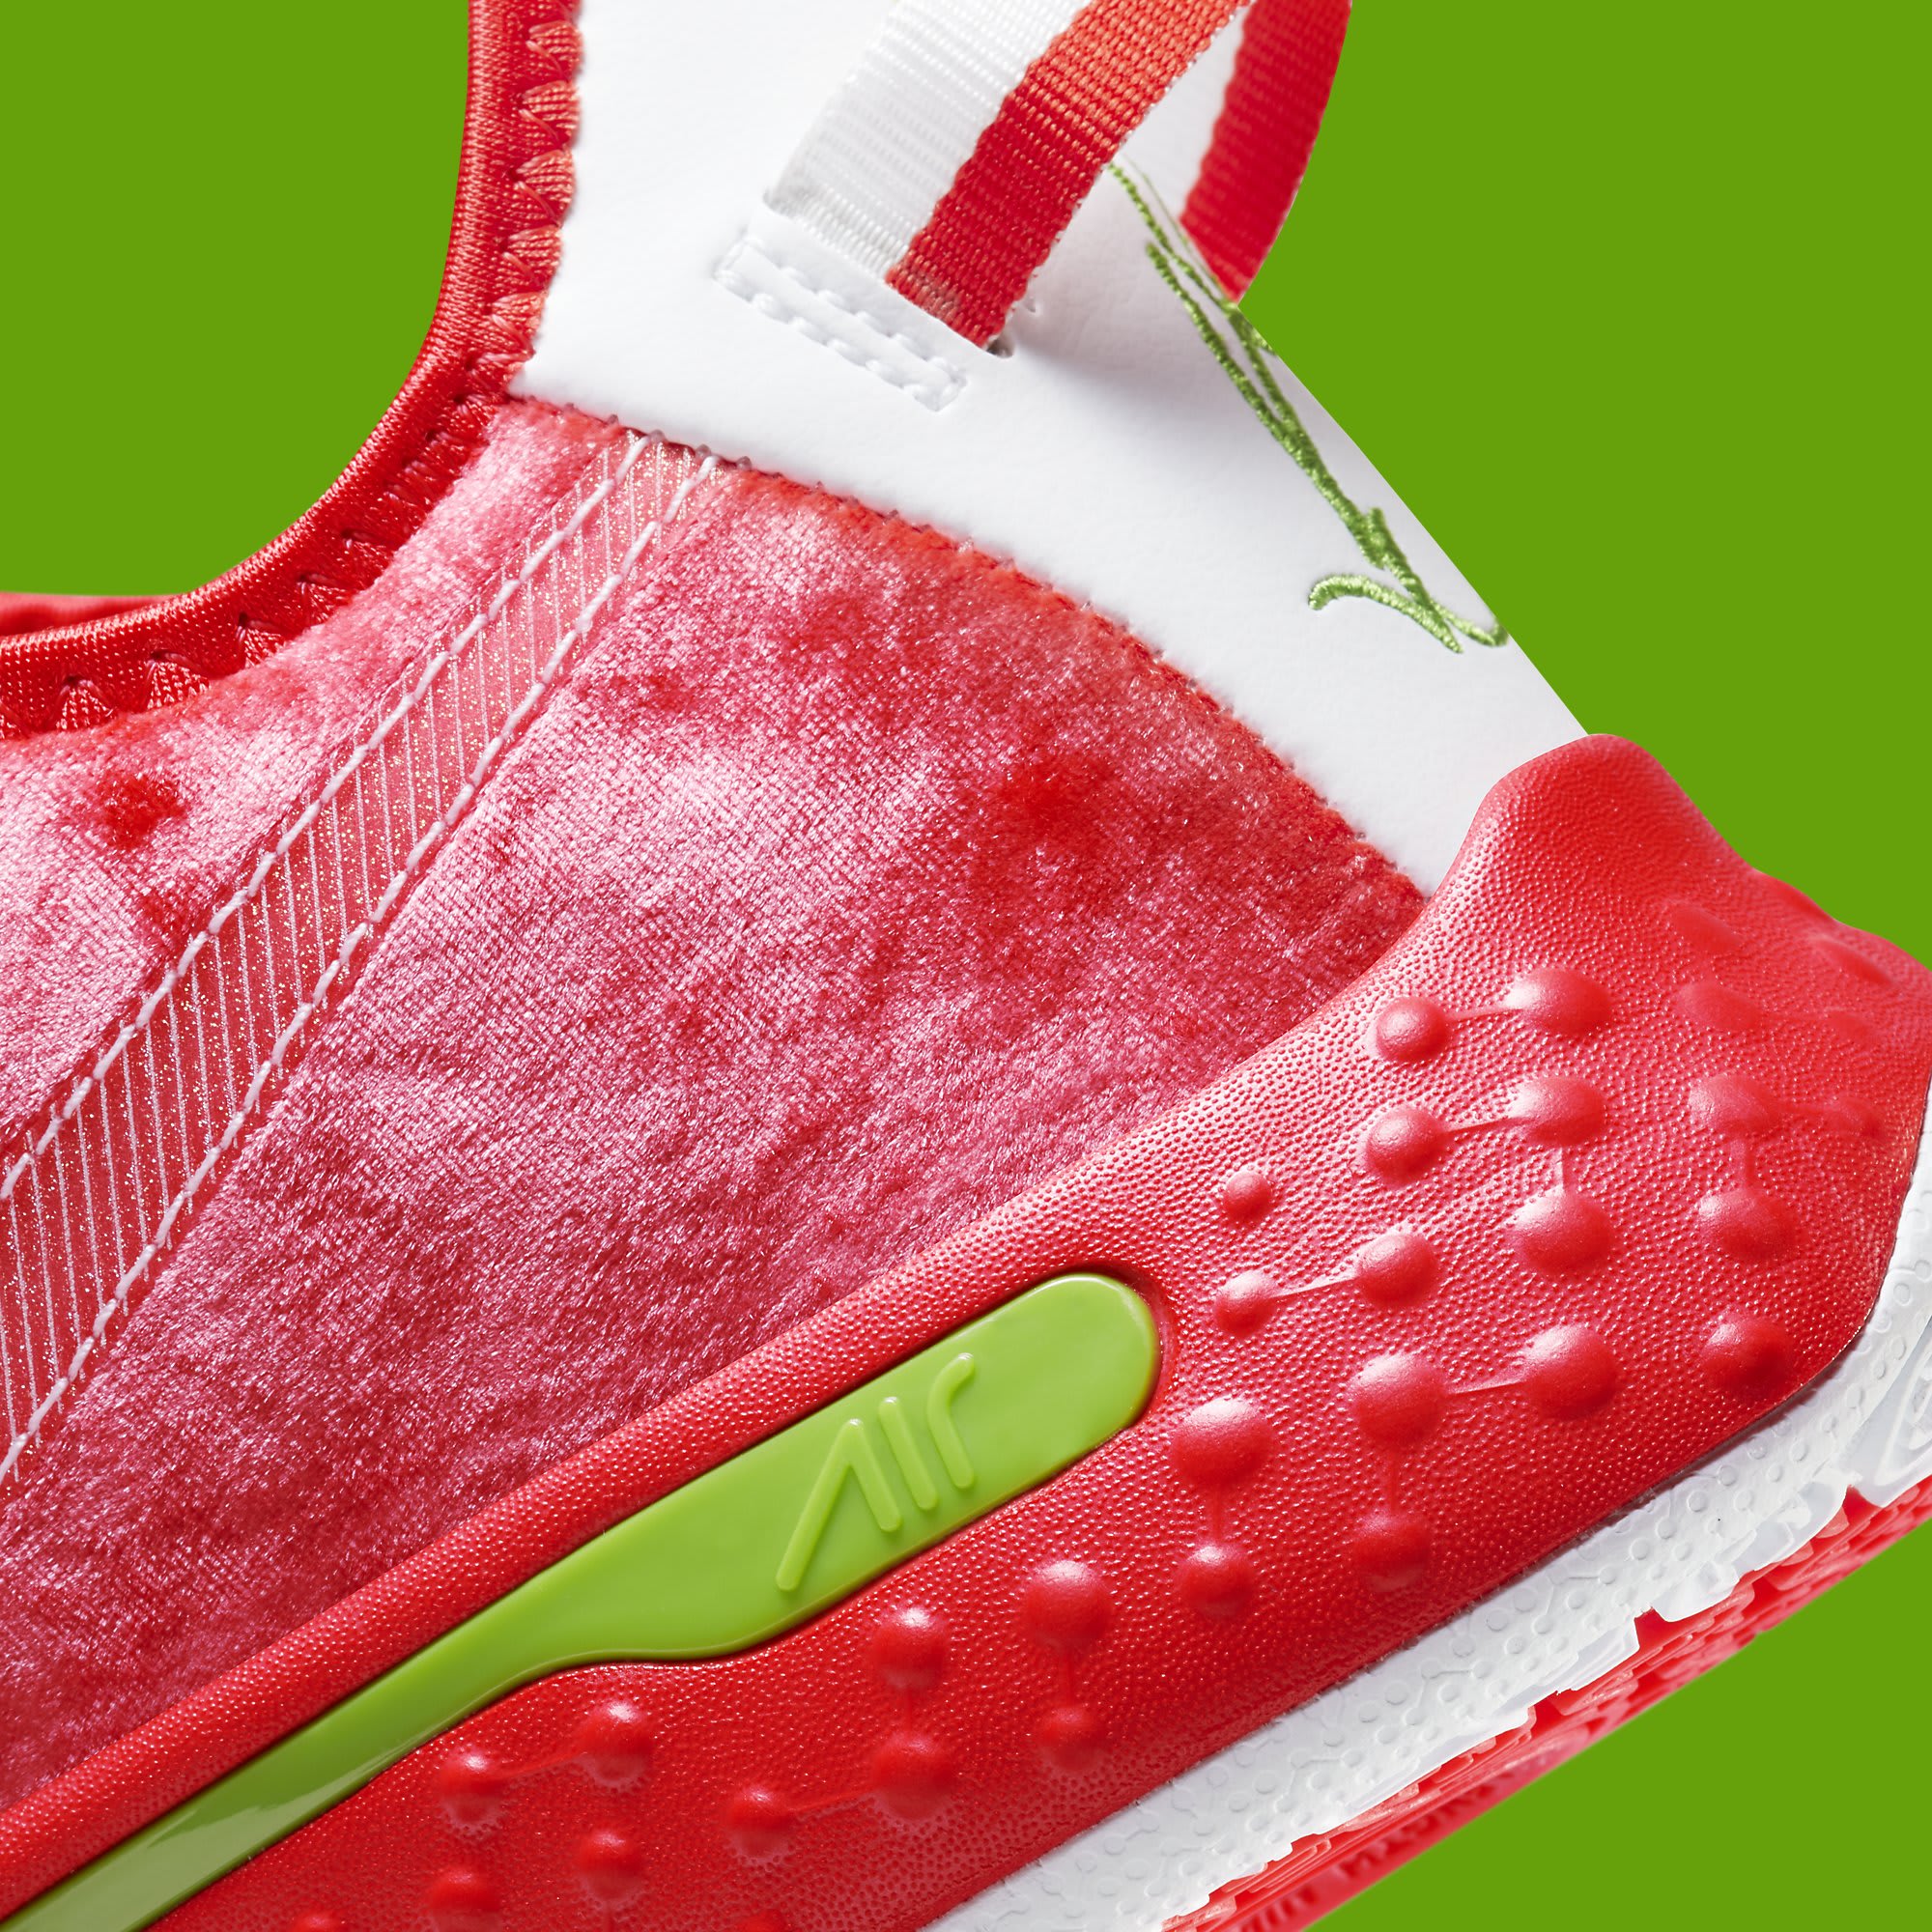 Nike PG 4 Christmas Release Date CD5082-602 Heel Detail